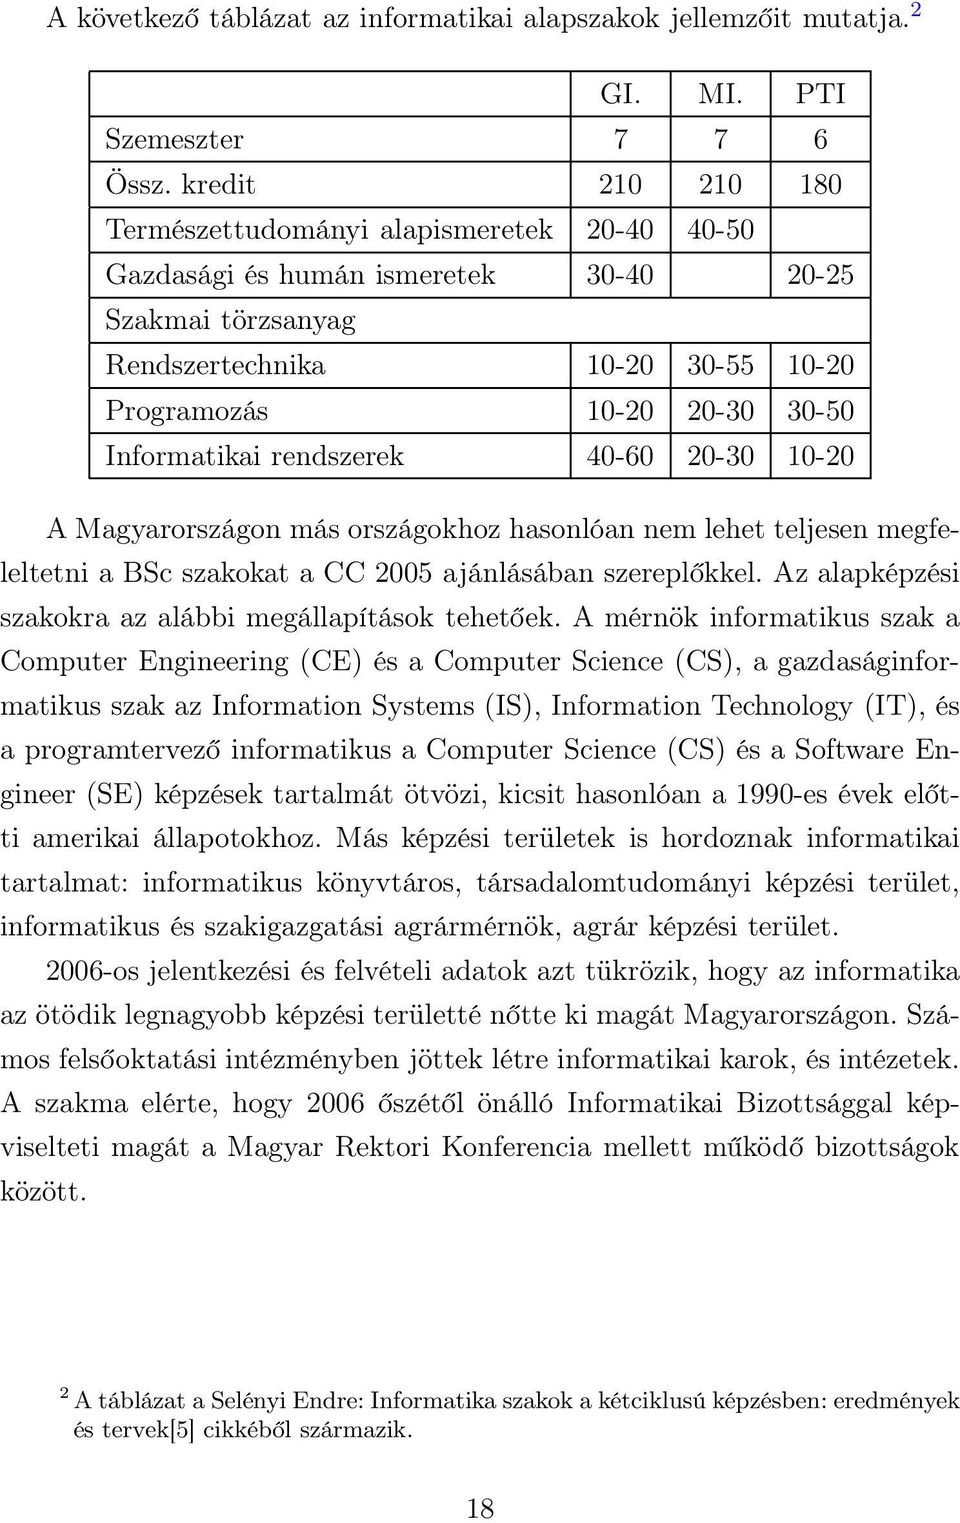 Informatikai rendszerek 40-60 20-30 10-20 A Magyarországon más országokhoz hasonlóan nem lehet teljesen megfeleltetni a BSc szakokat a CC 2005 ajánlásában szereplőkkel.